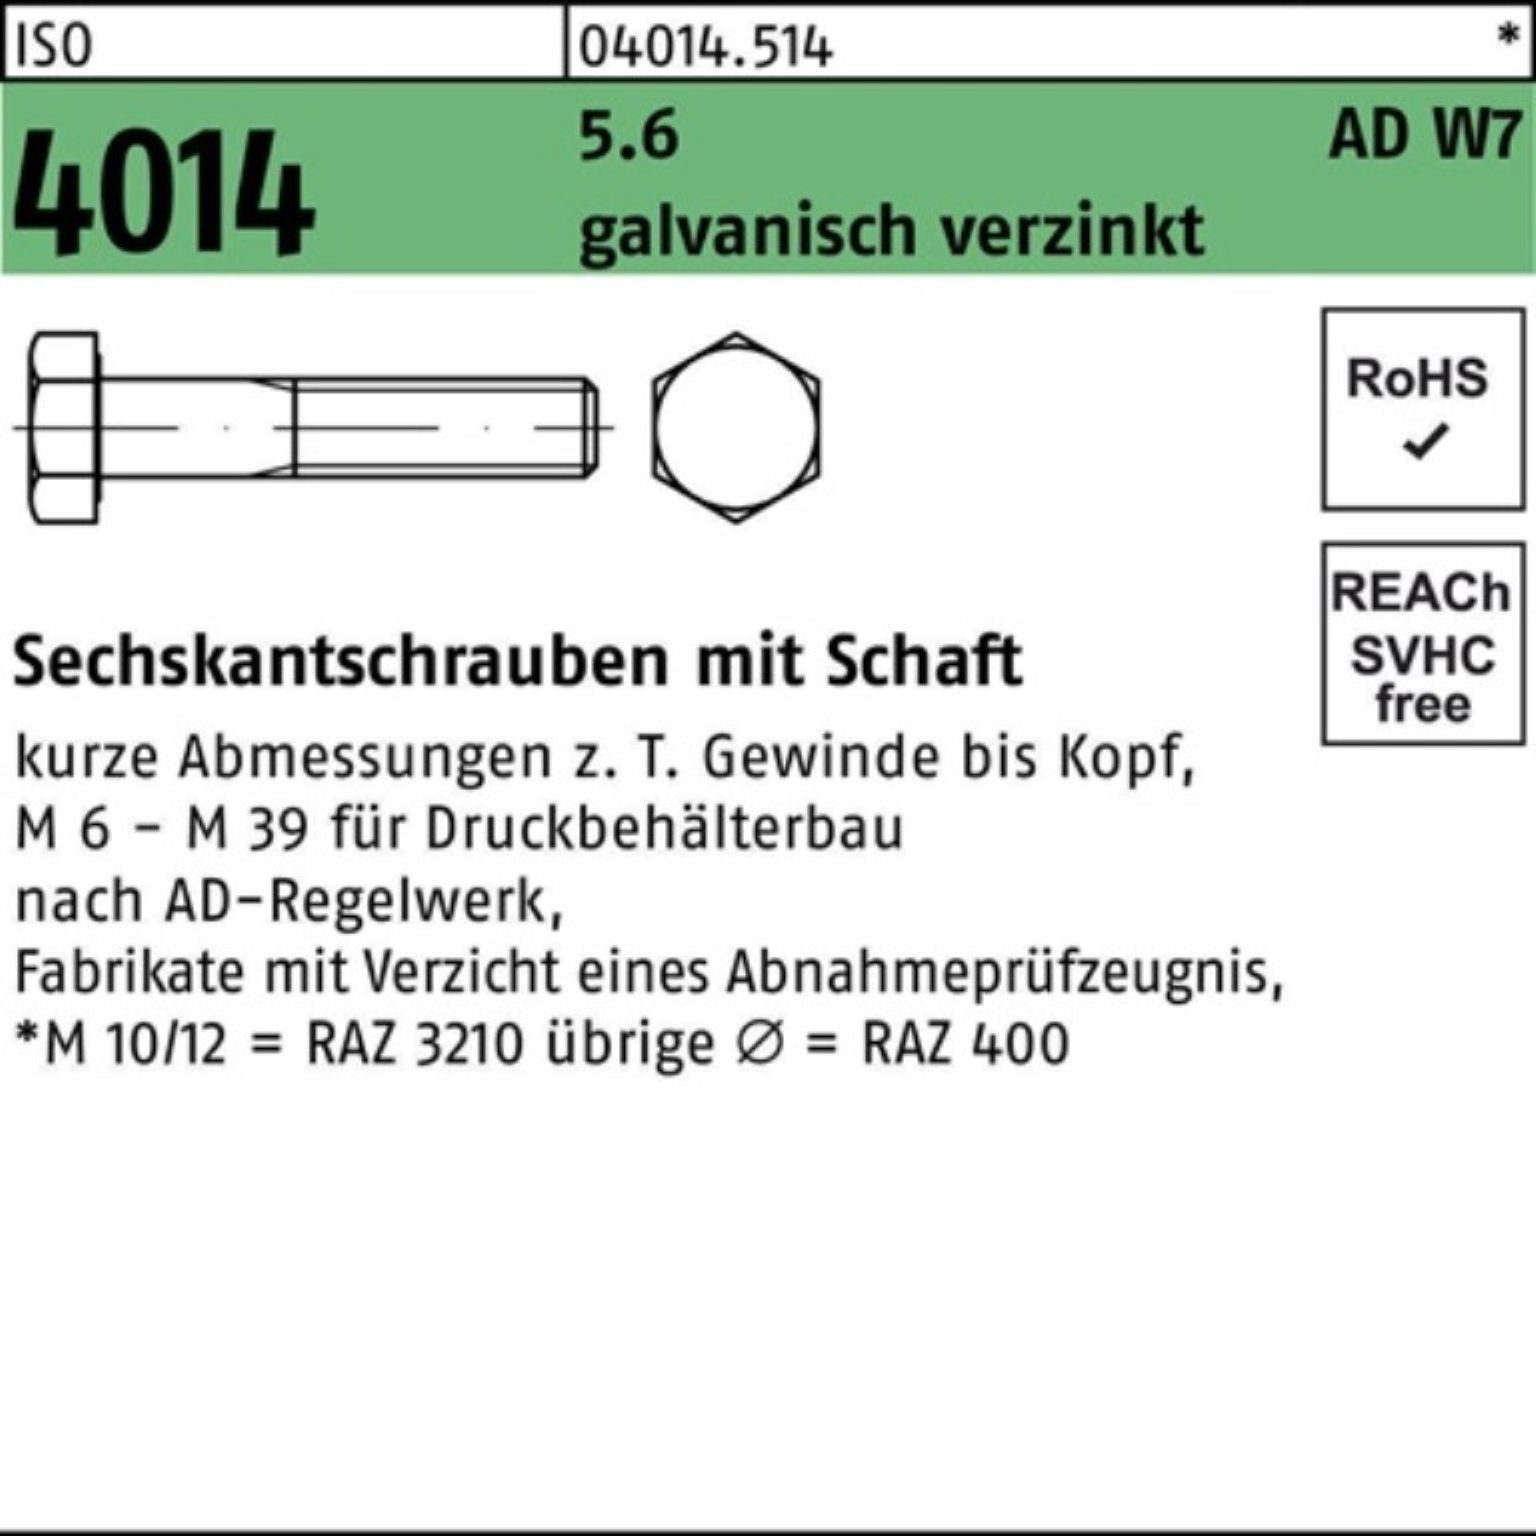 Bufab Sechskantschraube 100er ISO Schaft 90 M10x 5.6 W7 galv.verz. 4014 Pack Sechskantschraube